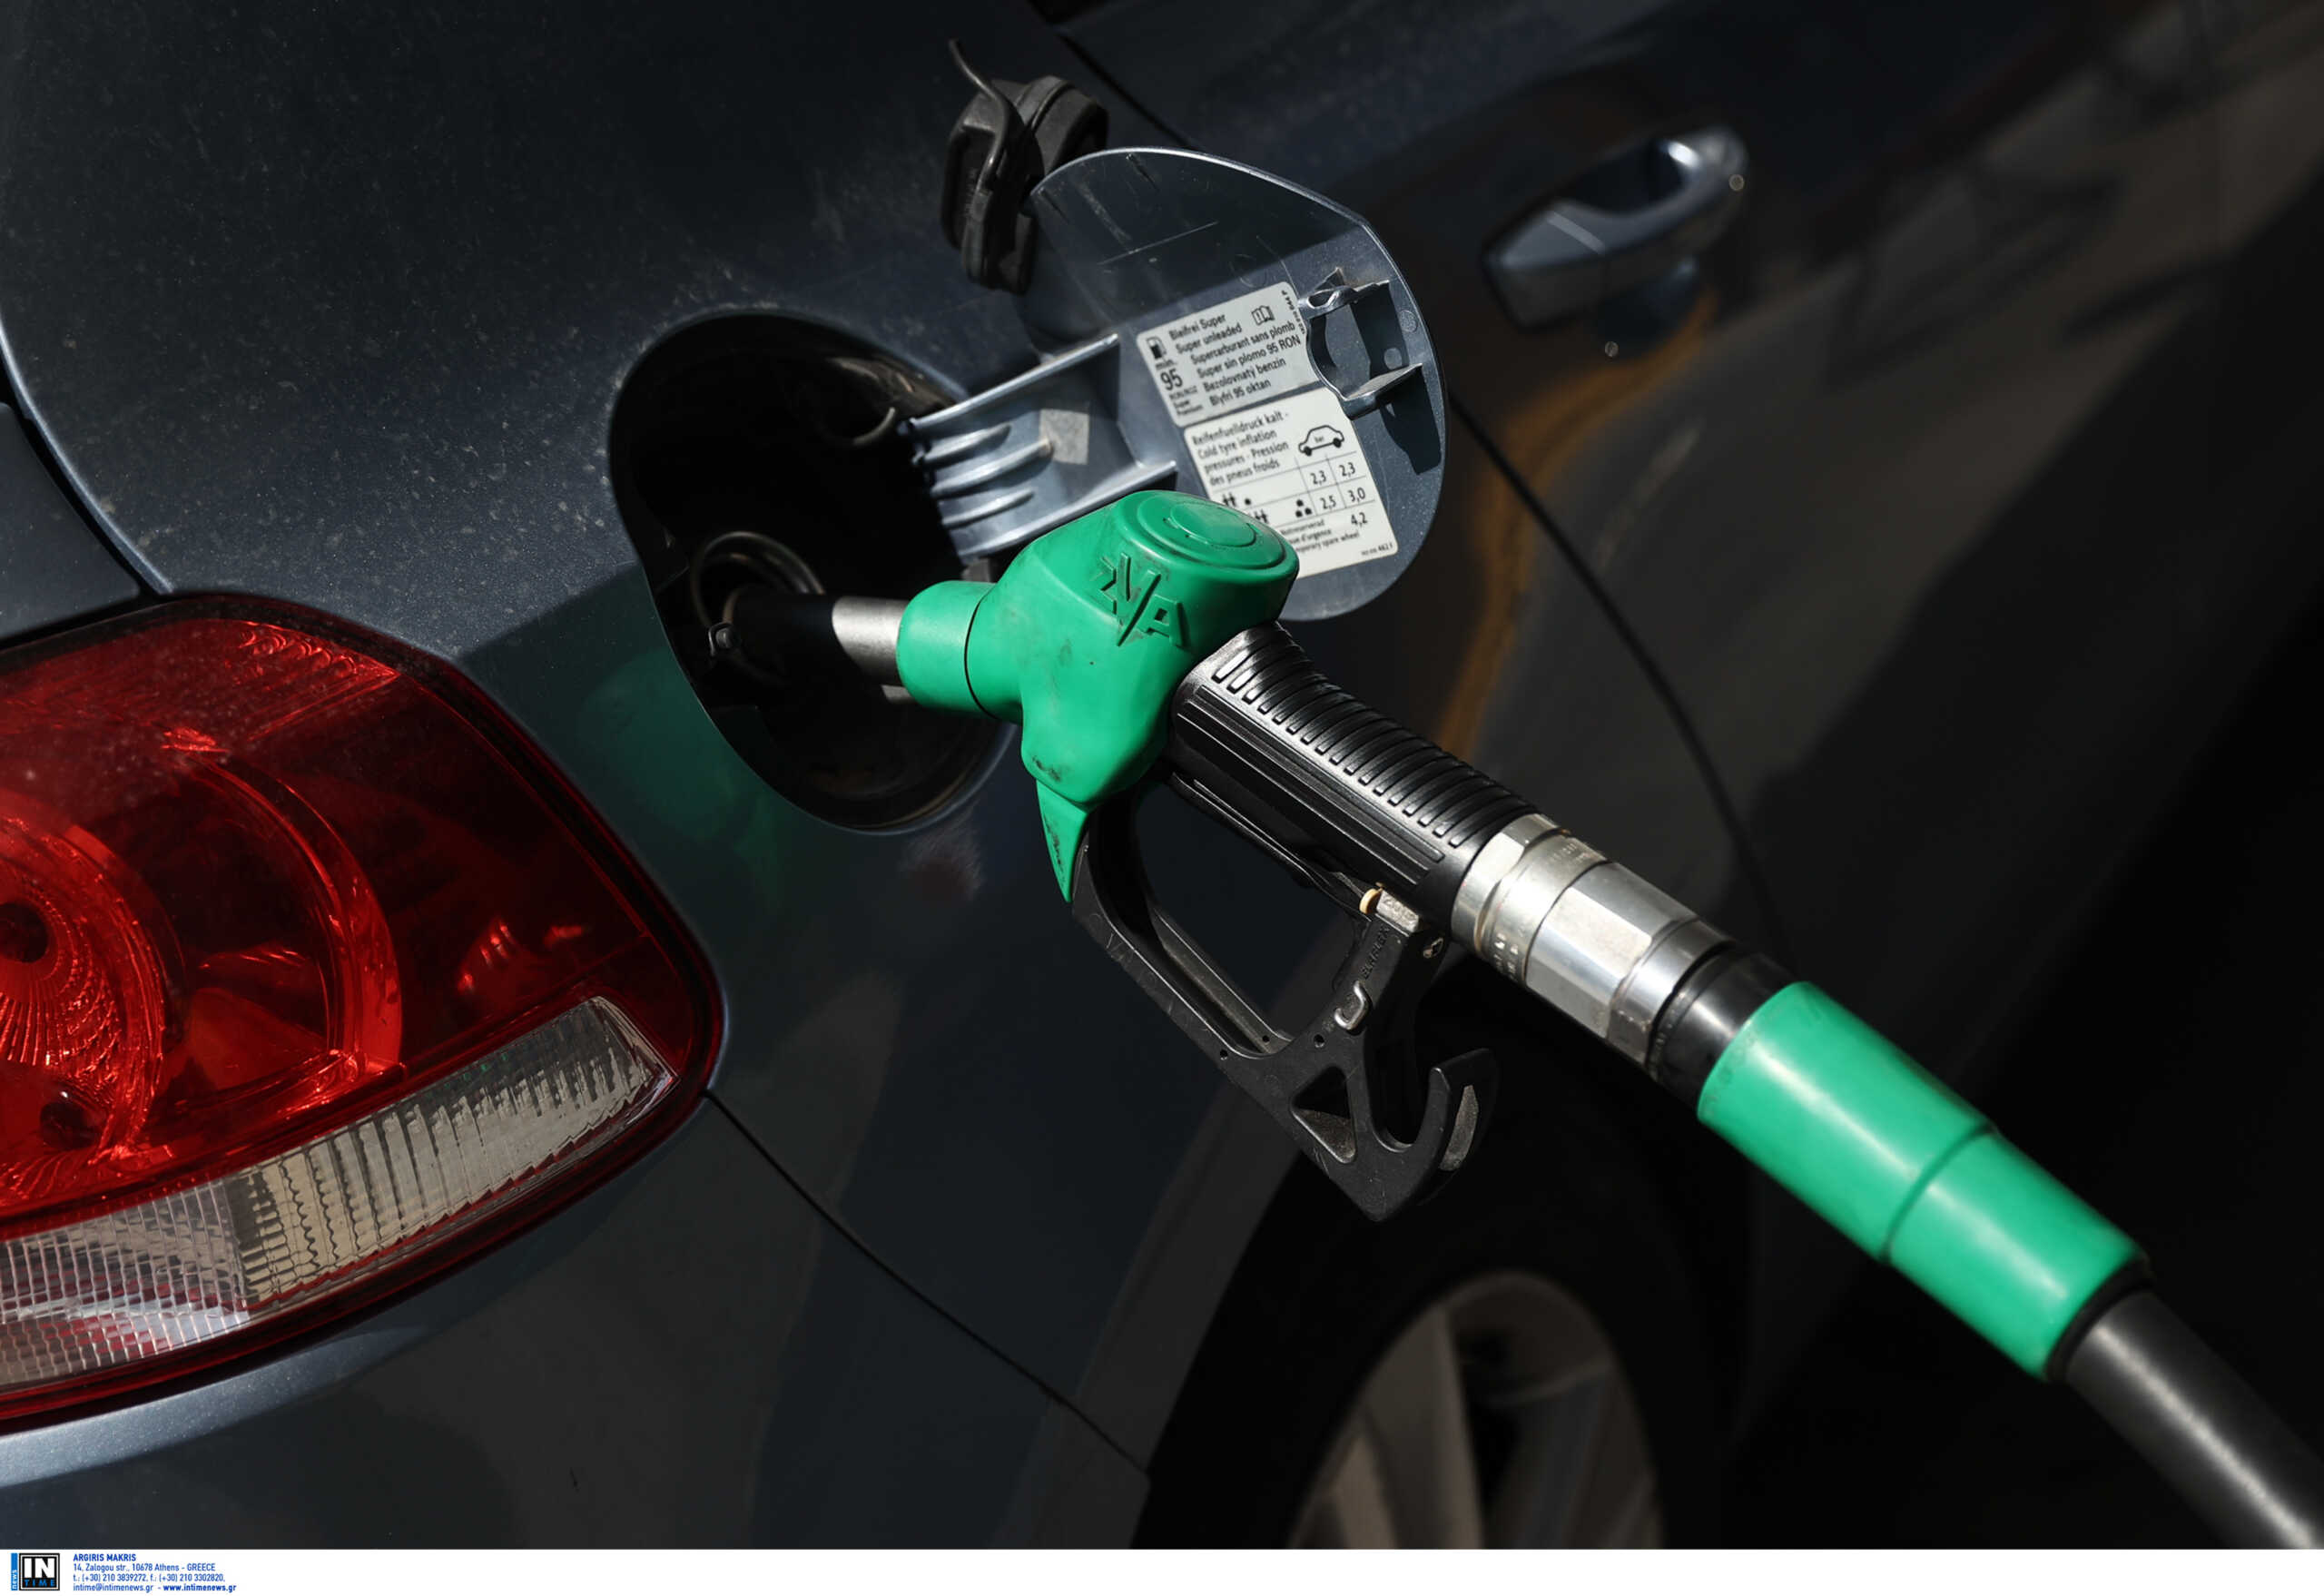 Αισθητή μείωση στα καύσιμα από σήμερα – Πιθανότητα οριακής μείωσης του πληθωρισμού μετά από 16 μήνες